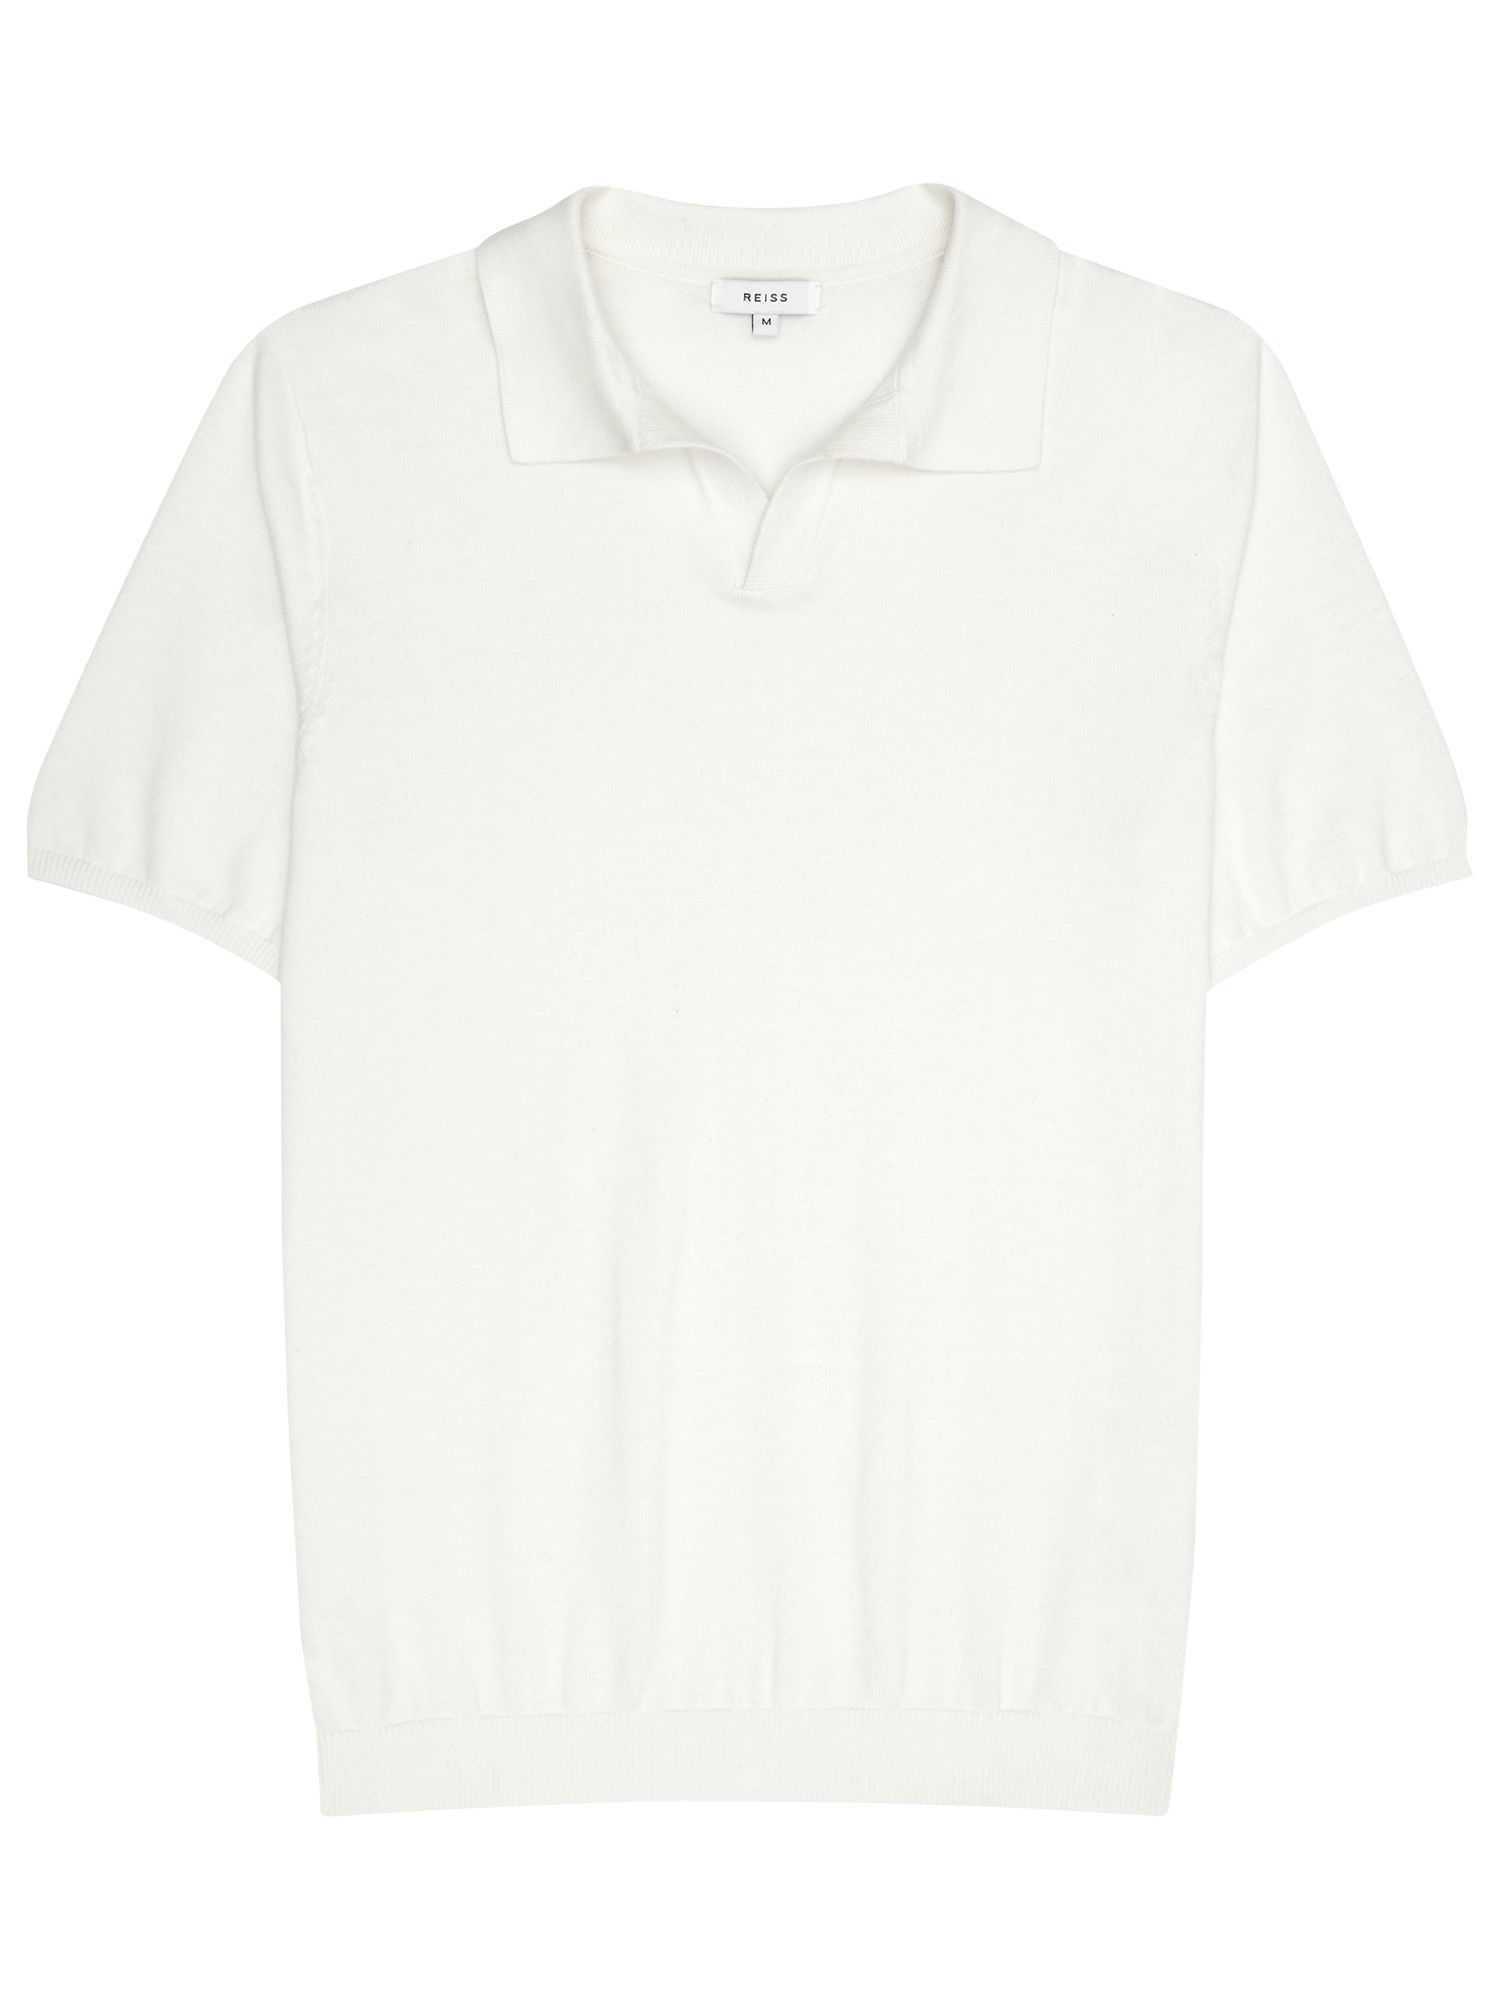 Reiss Bailey Open Collar Polo Shirt, Off White